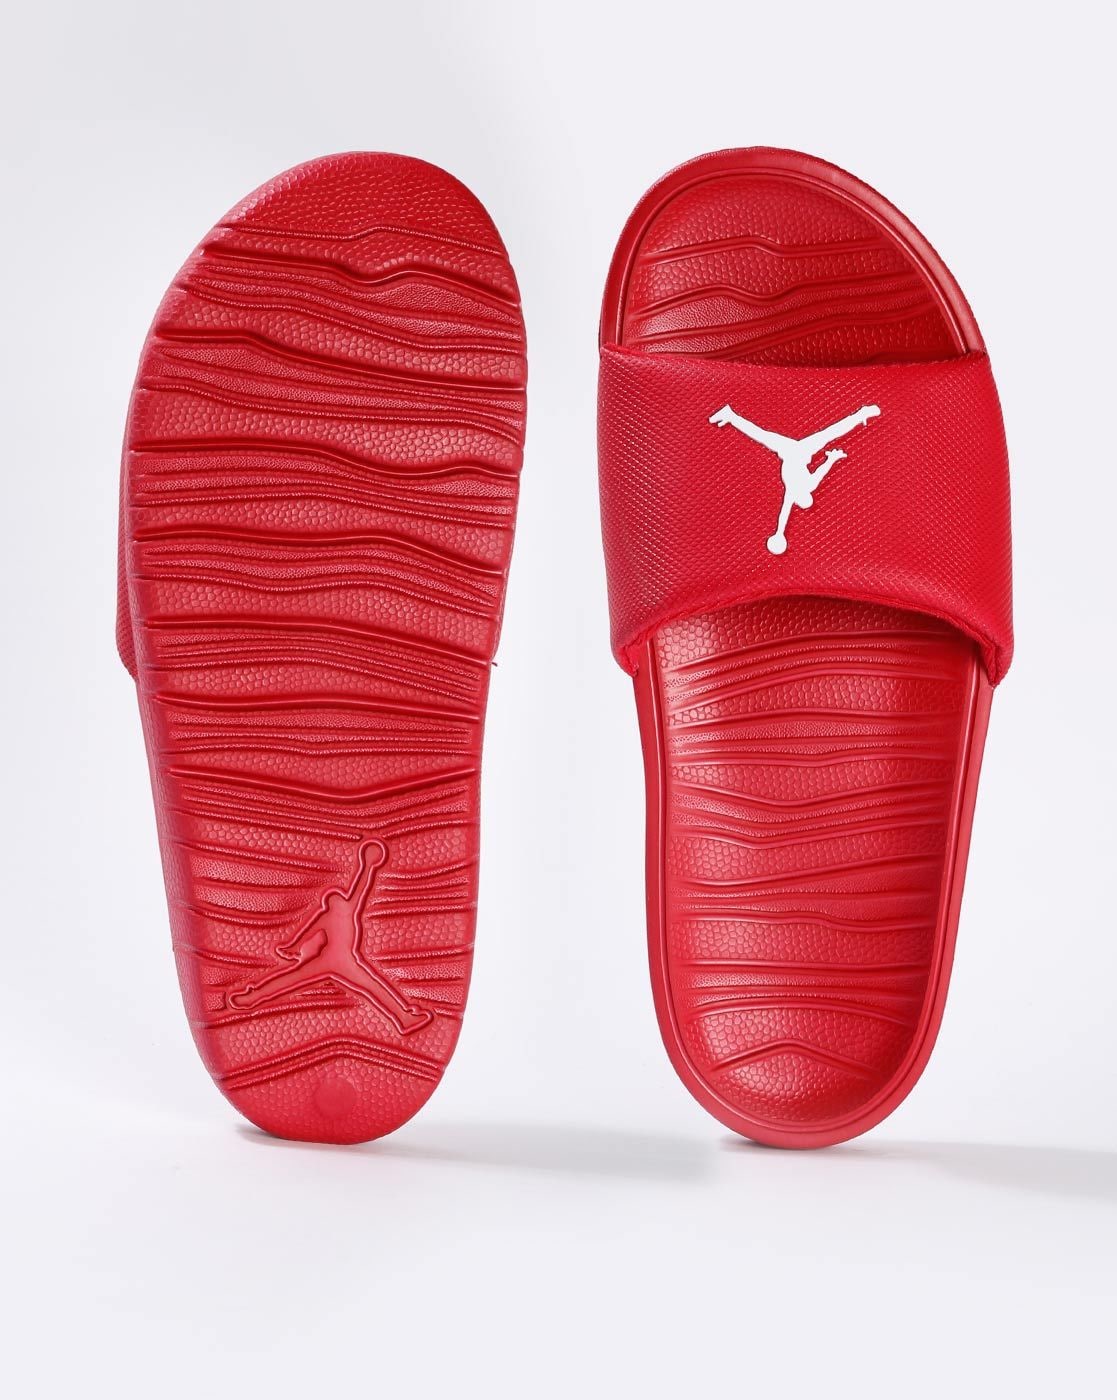 Nike Jordan Slippers - Buy Nike Jordan Slippers online in India